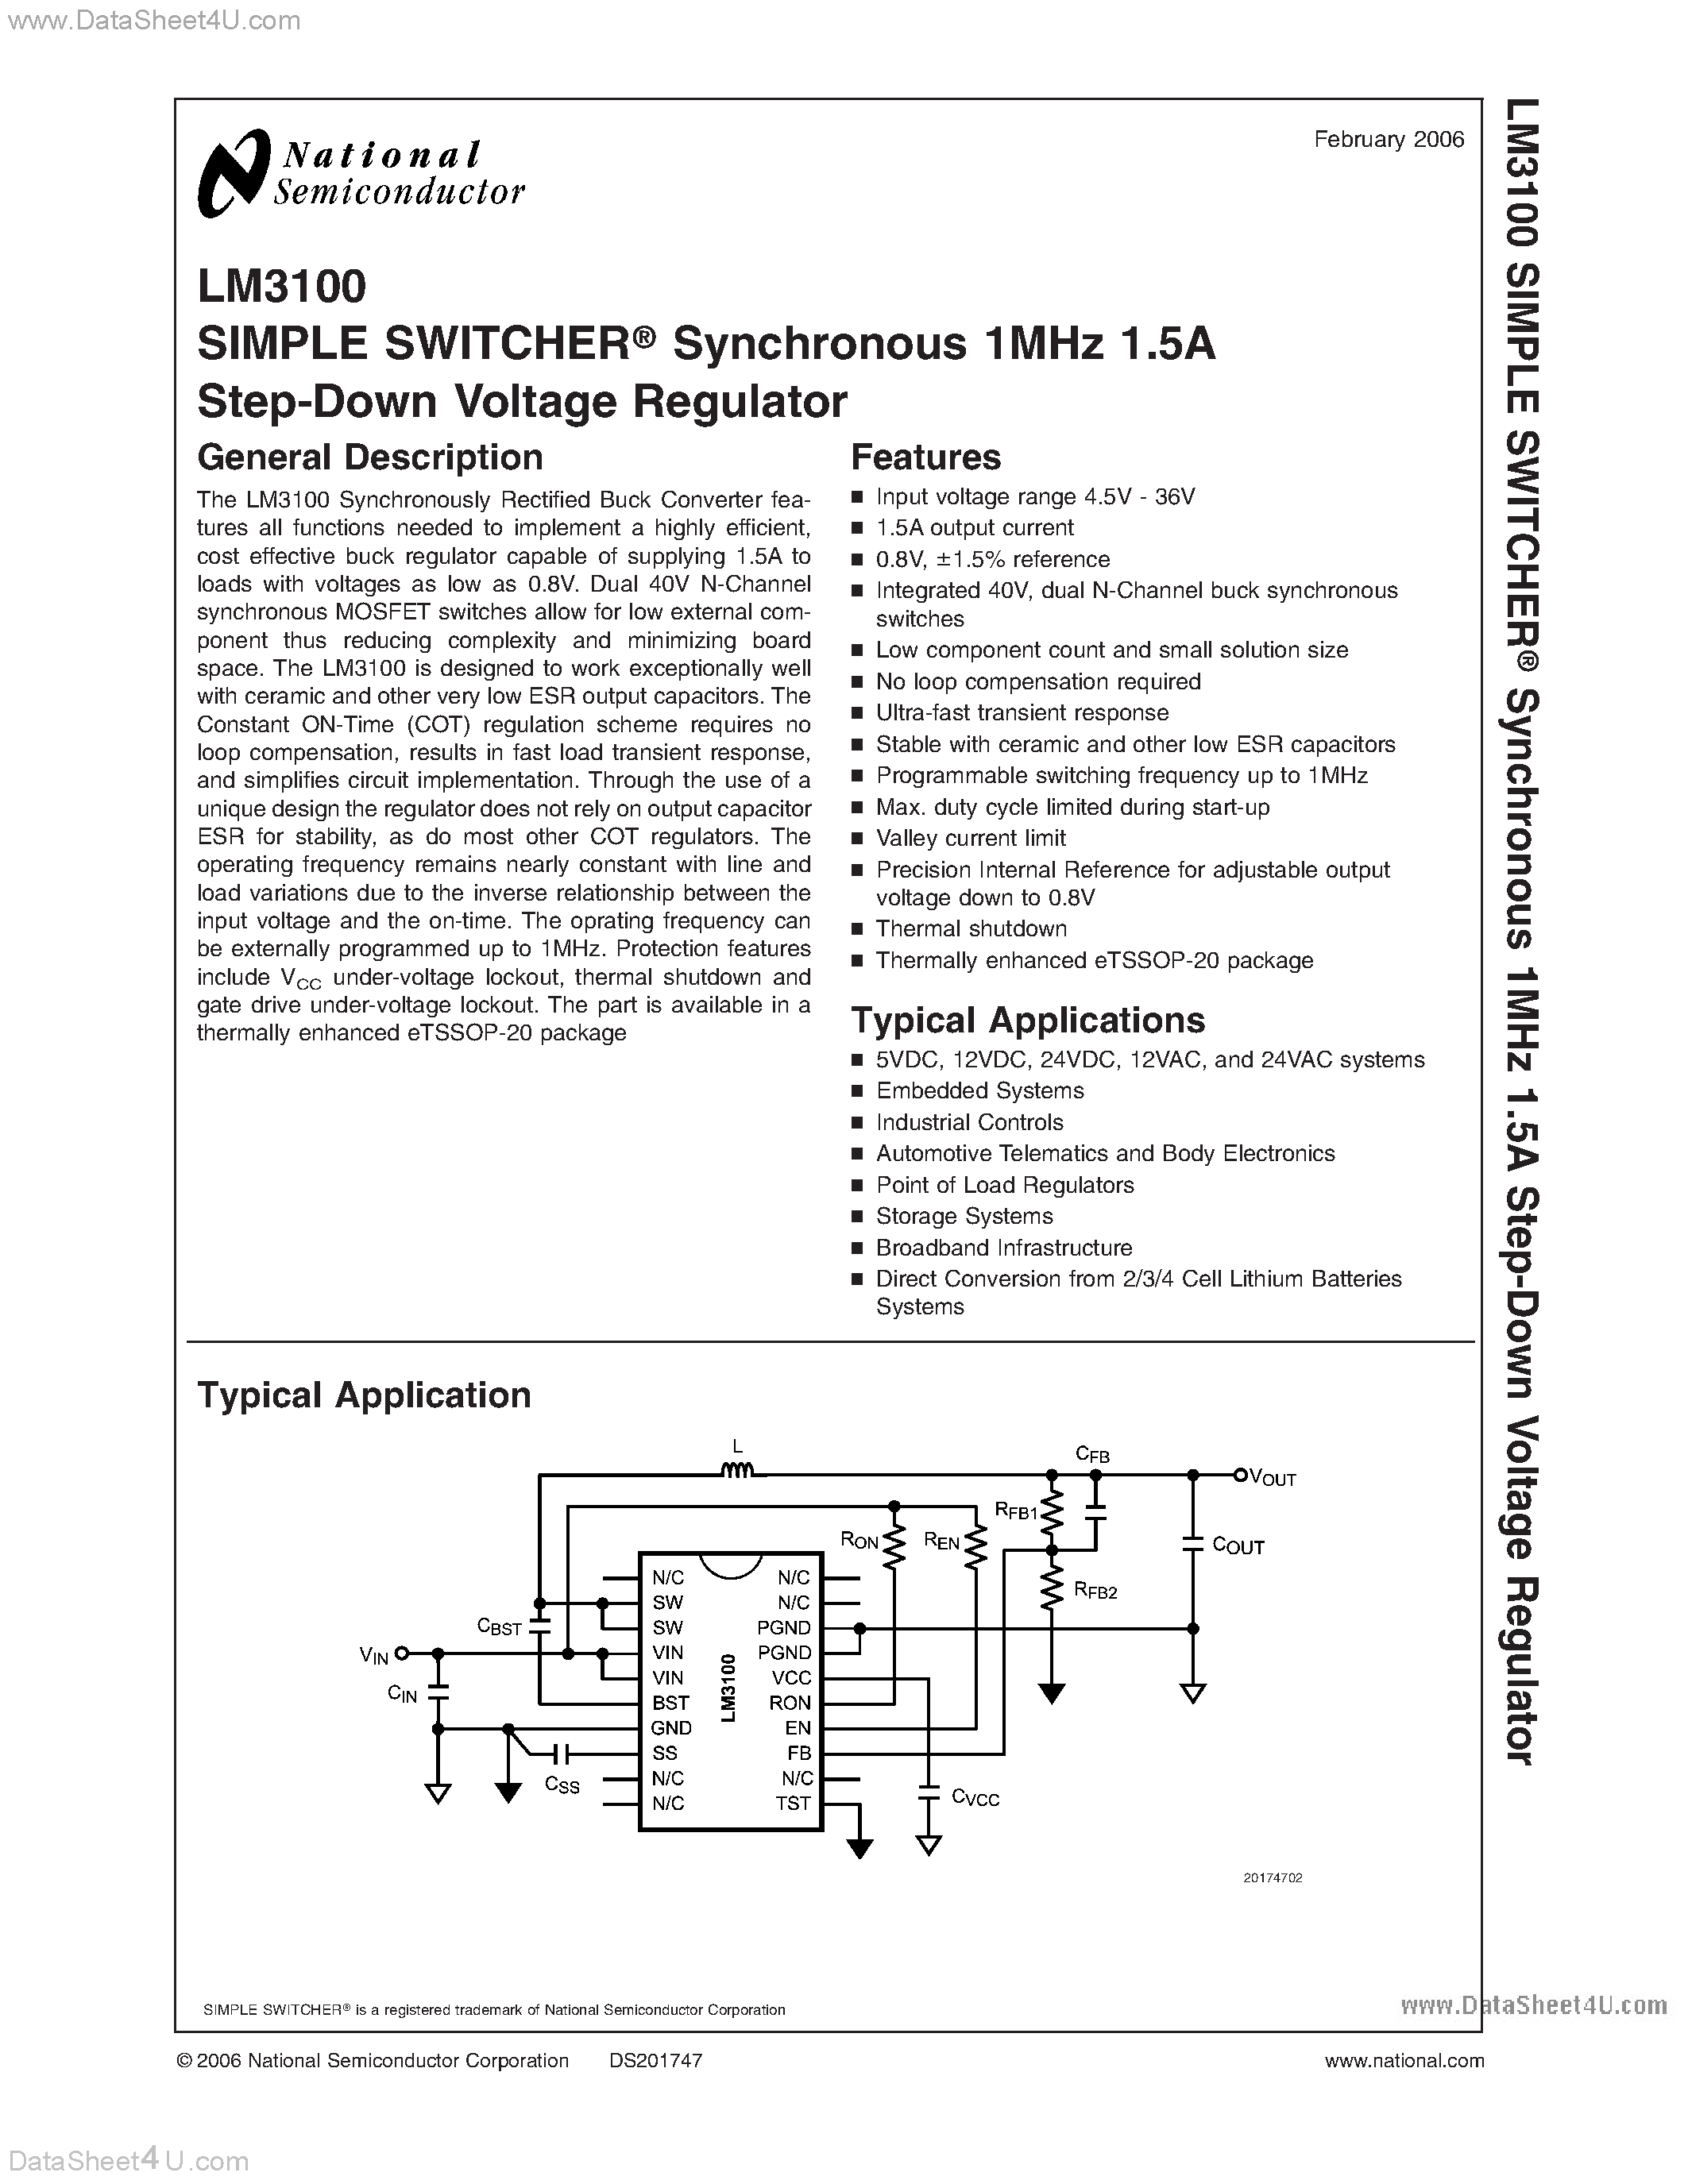 Даташит LM3100-Voltage Regulator страница 1